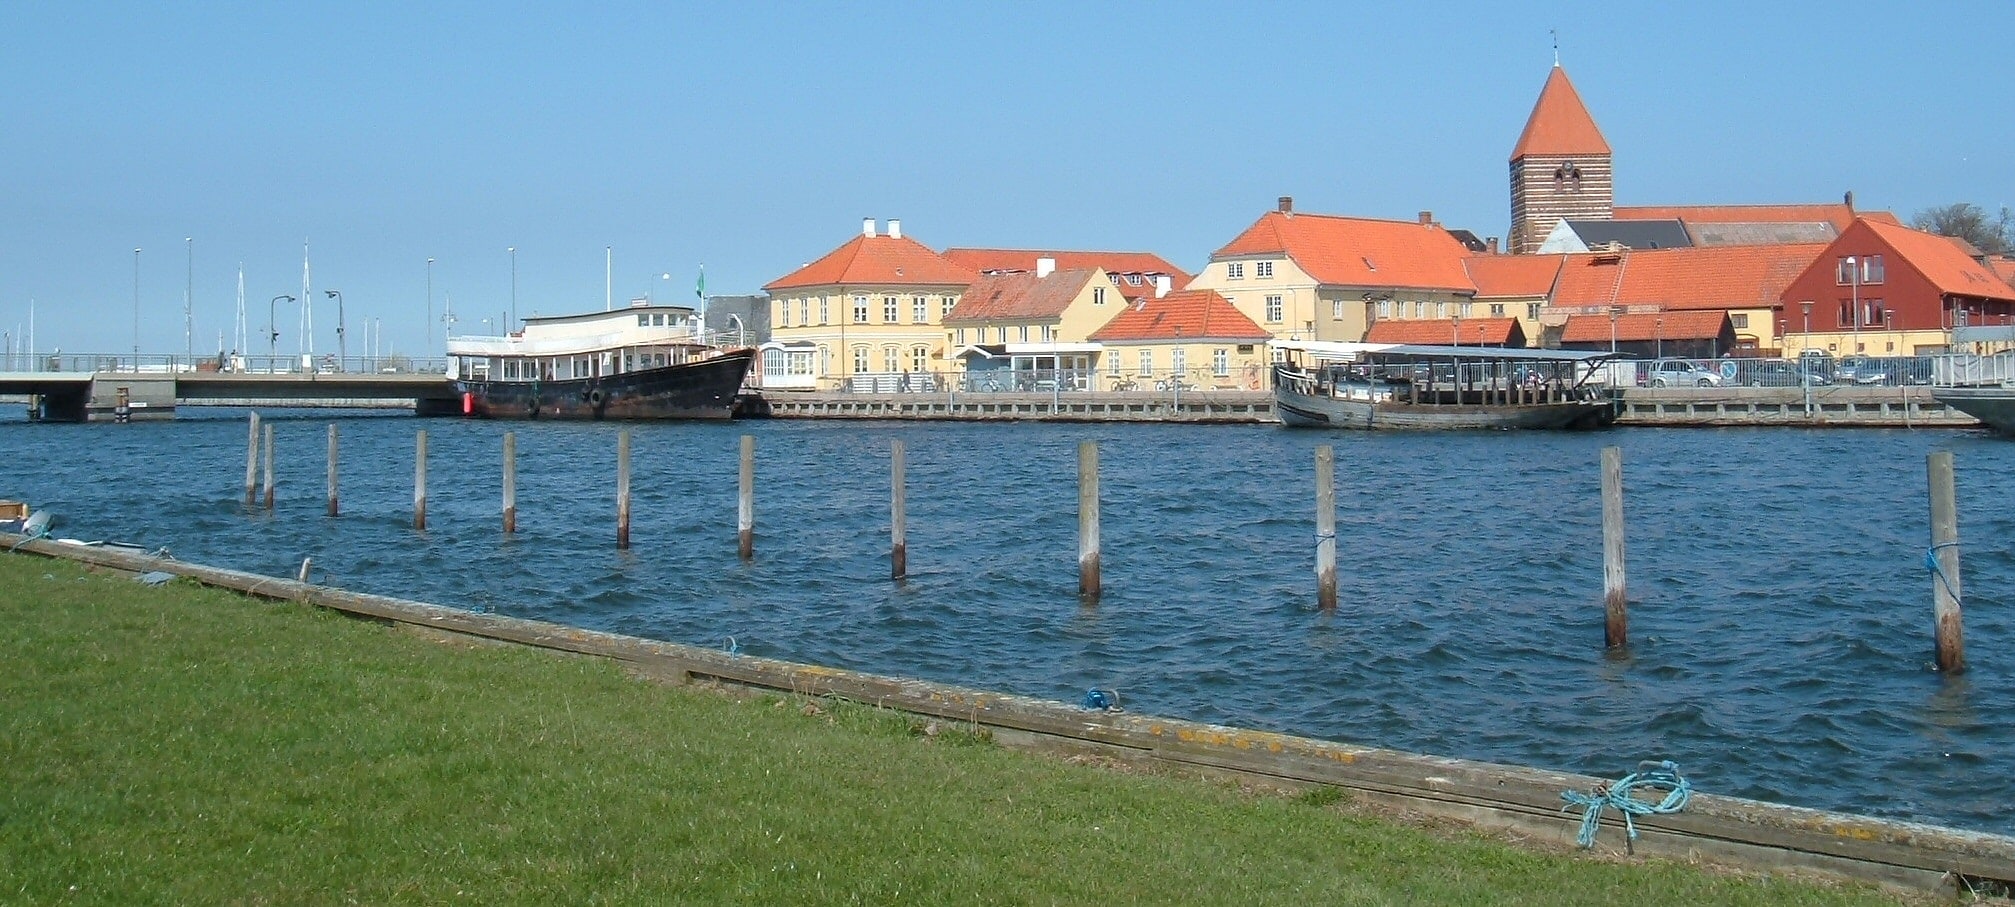 Stege, Dinamarca